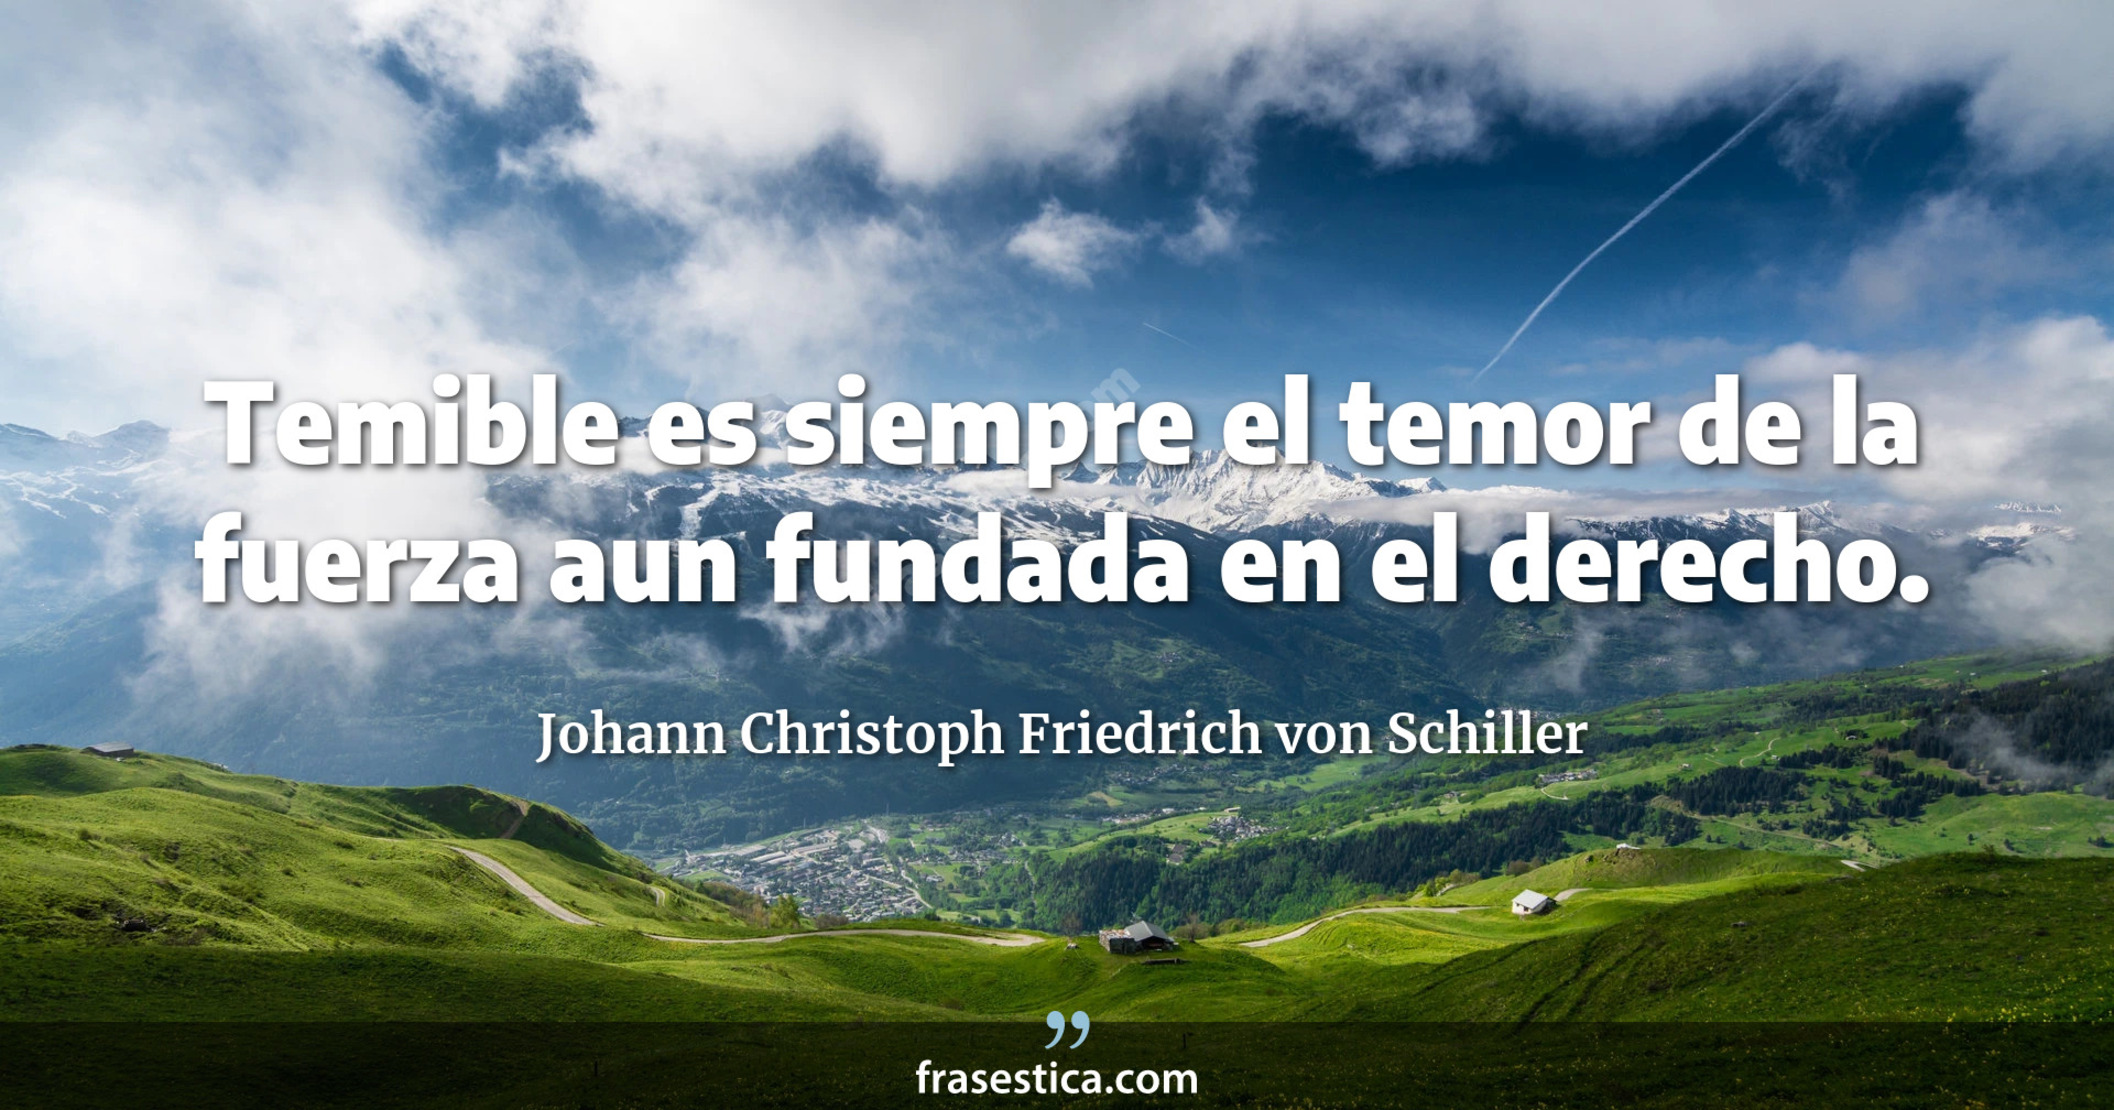 Temible es siempre el temor de la fuerza aun fundada en el derecho. - Johann Christoph Friedrich von Schiller